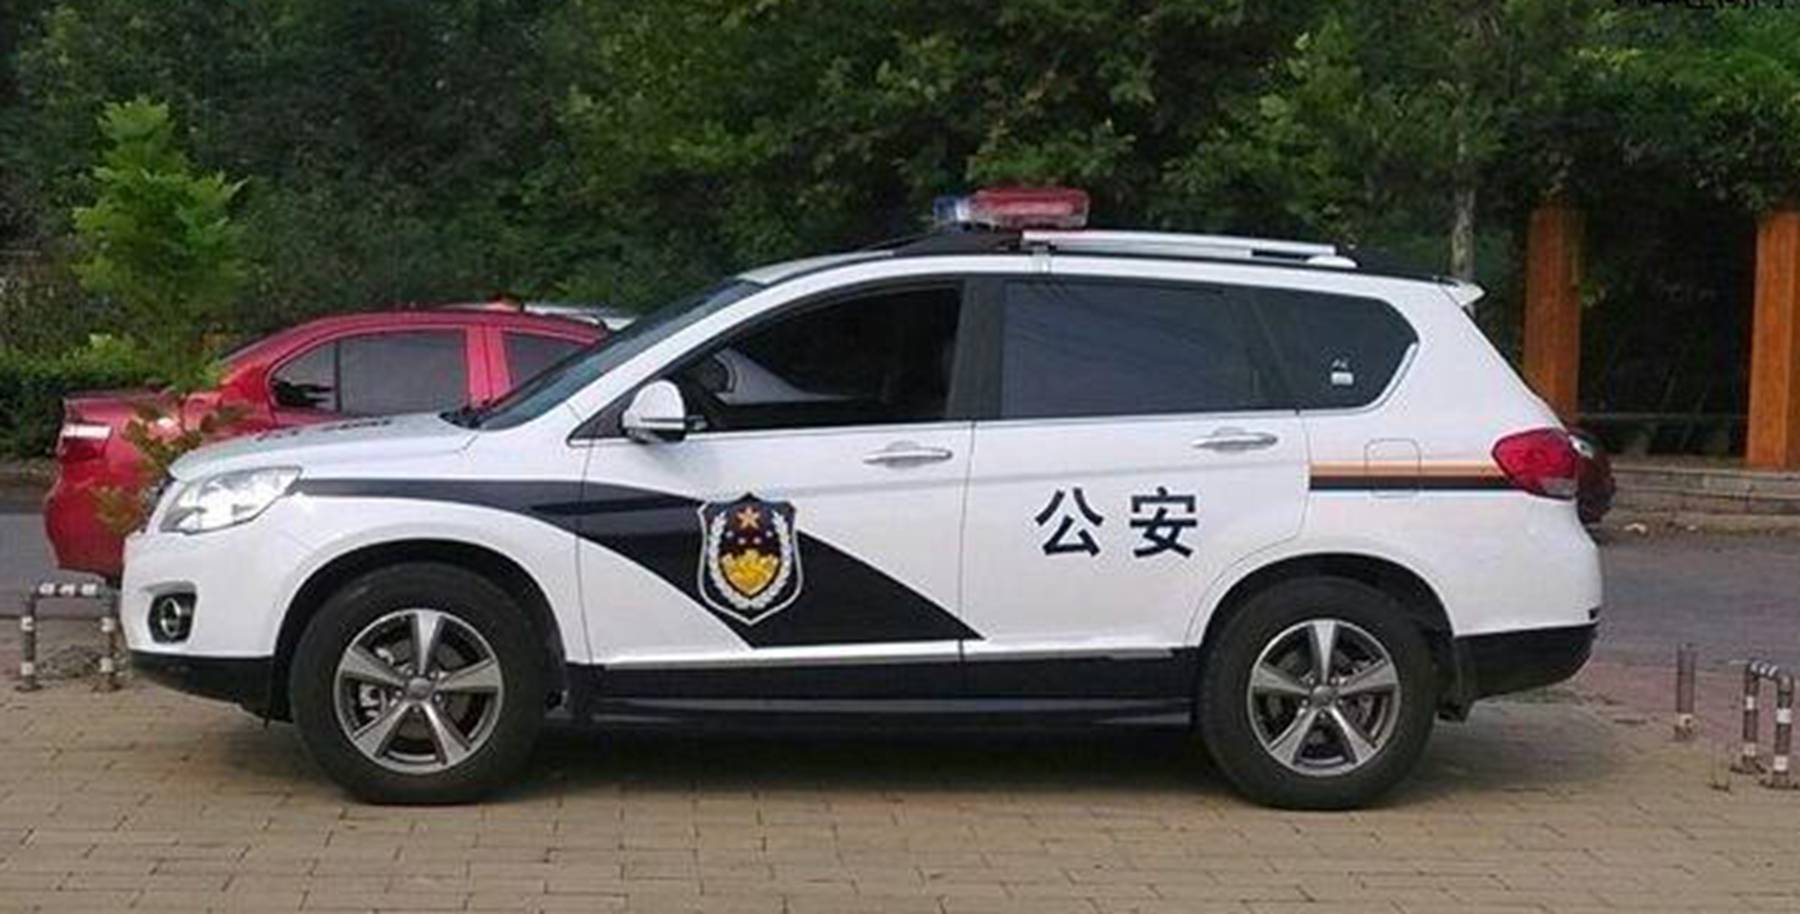 中国警车大换血统统淘汰丰田大众新车才彰显大国风范